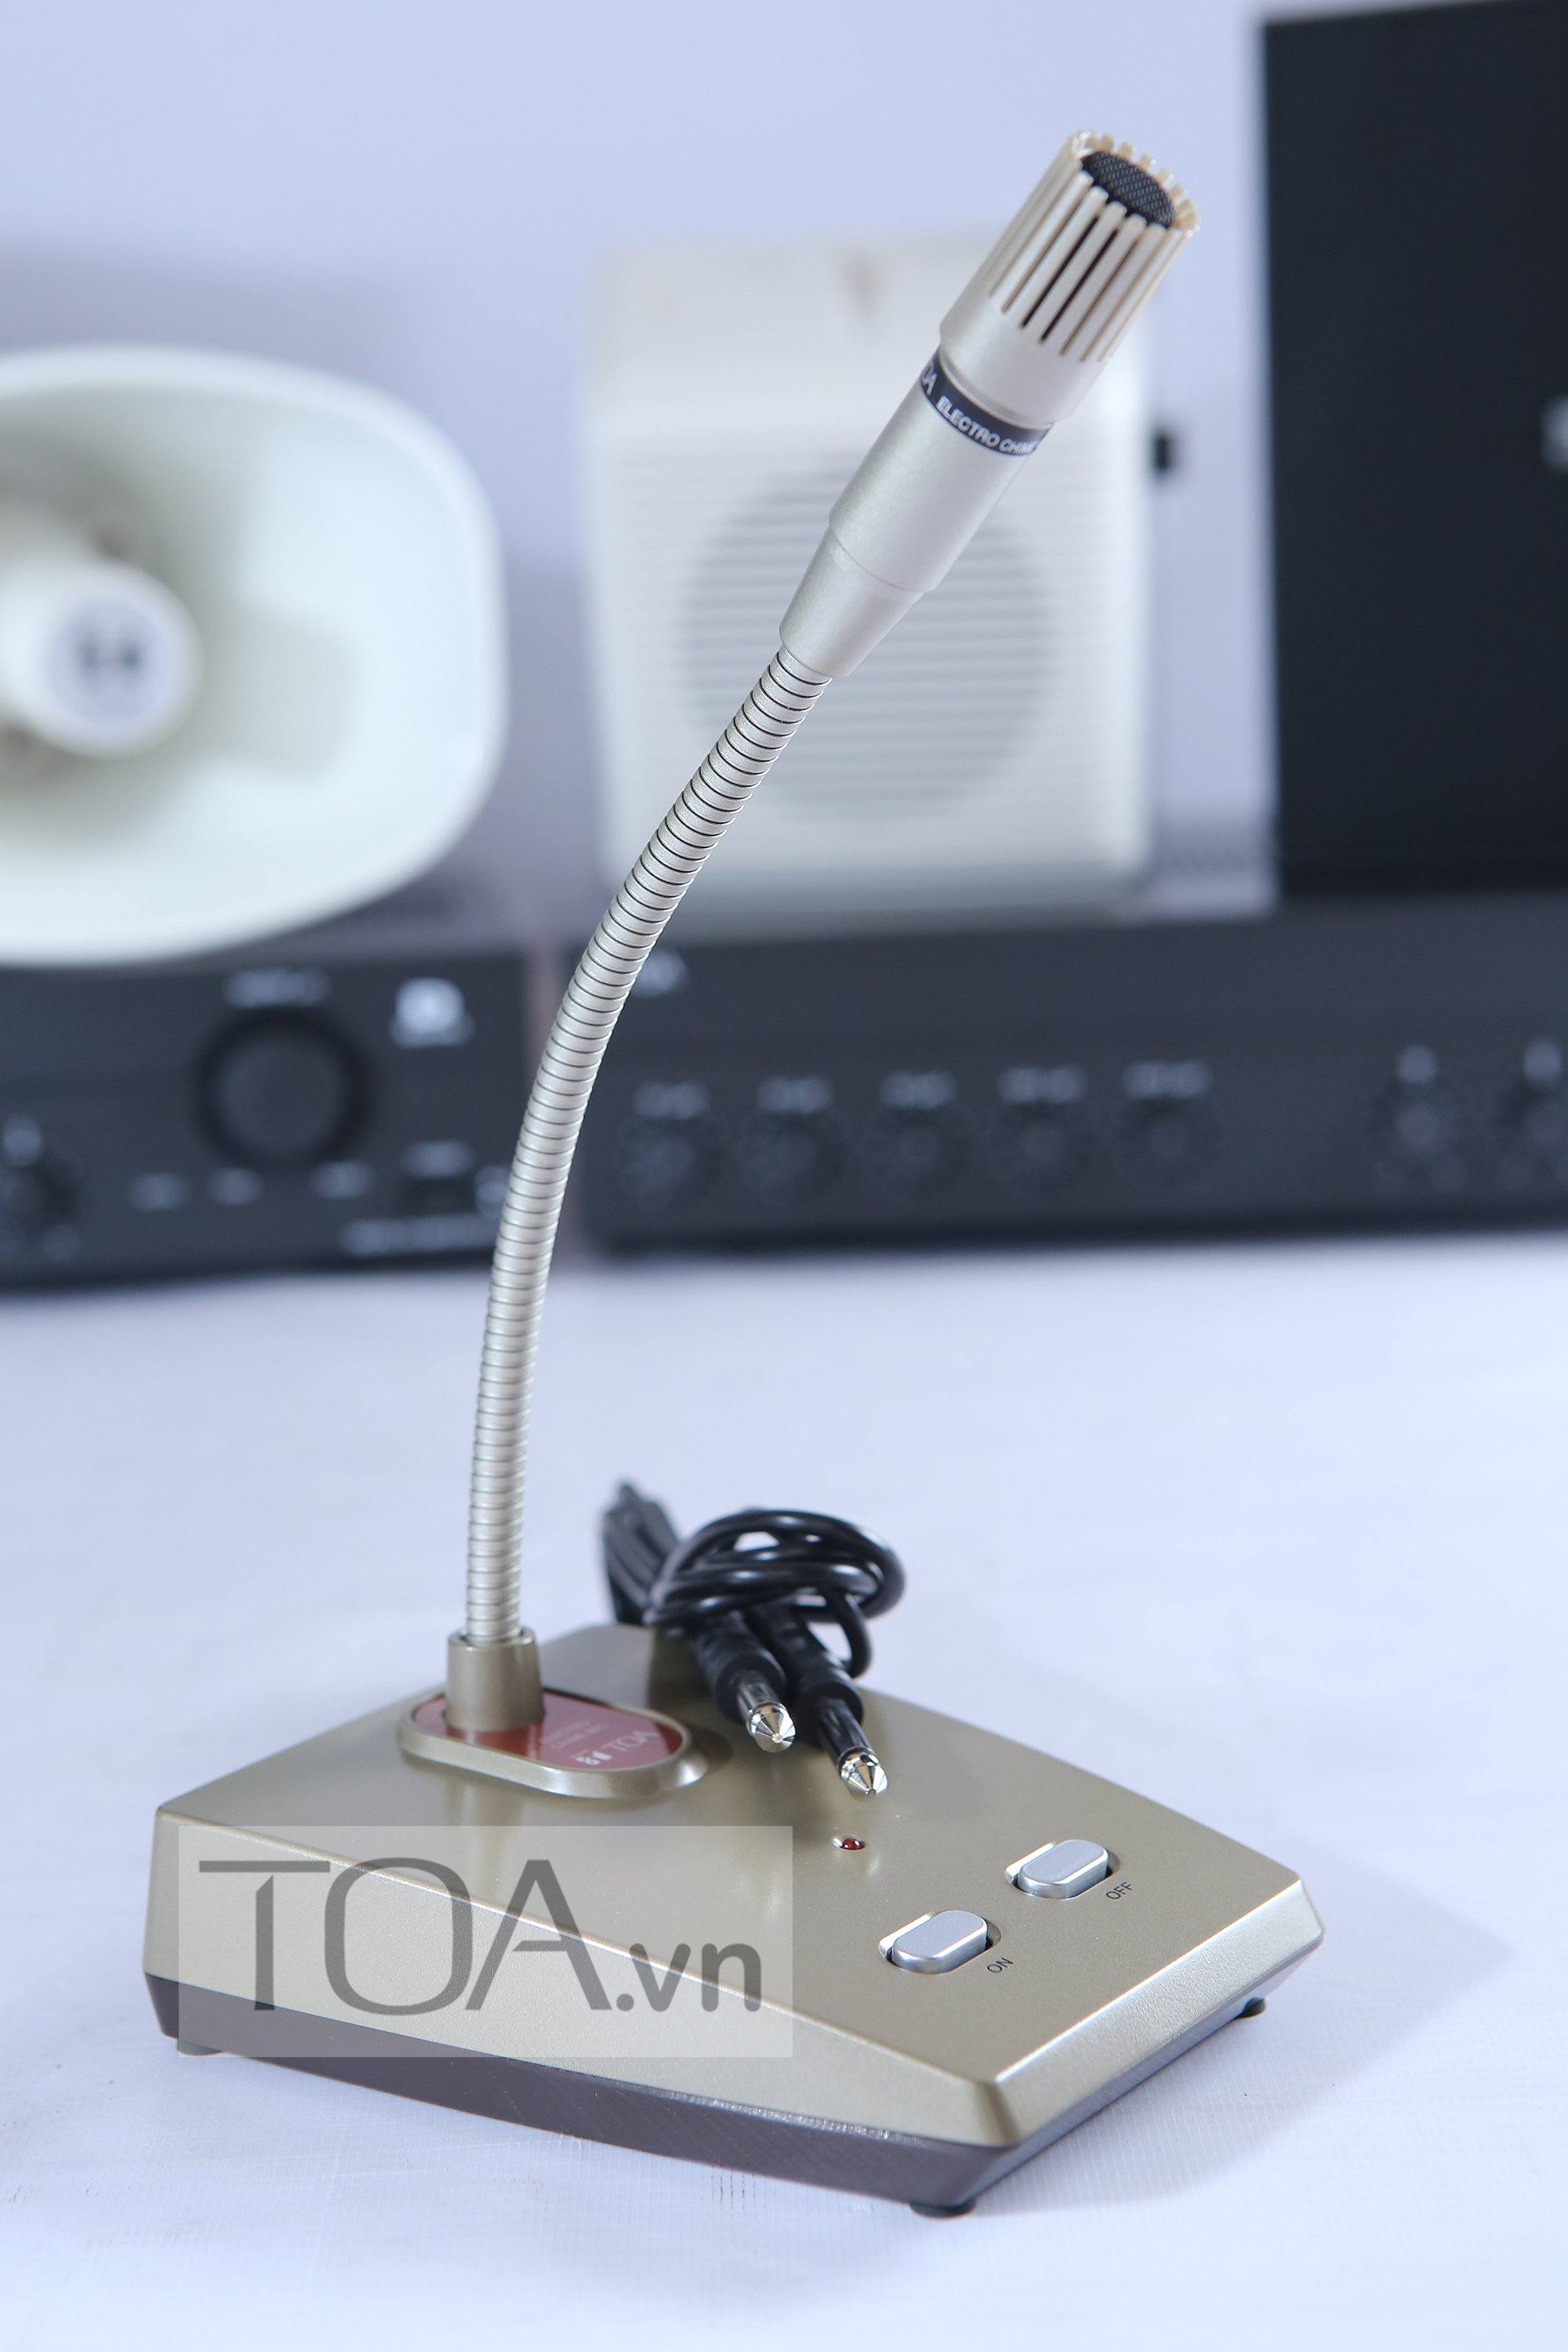 Micro thông báo TOA EC-100M